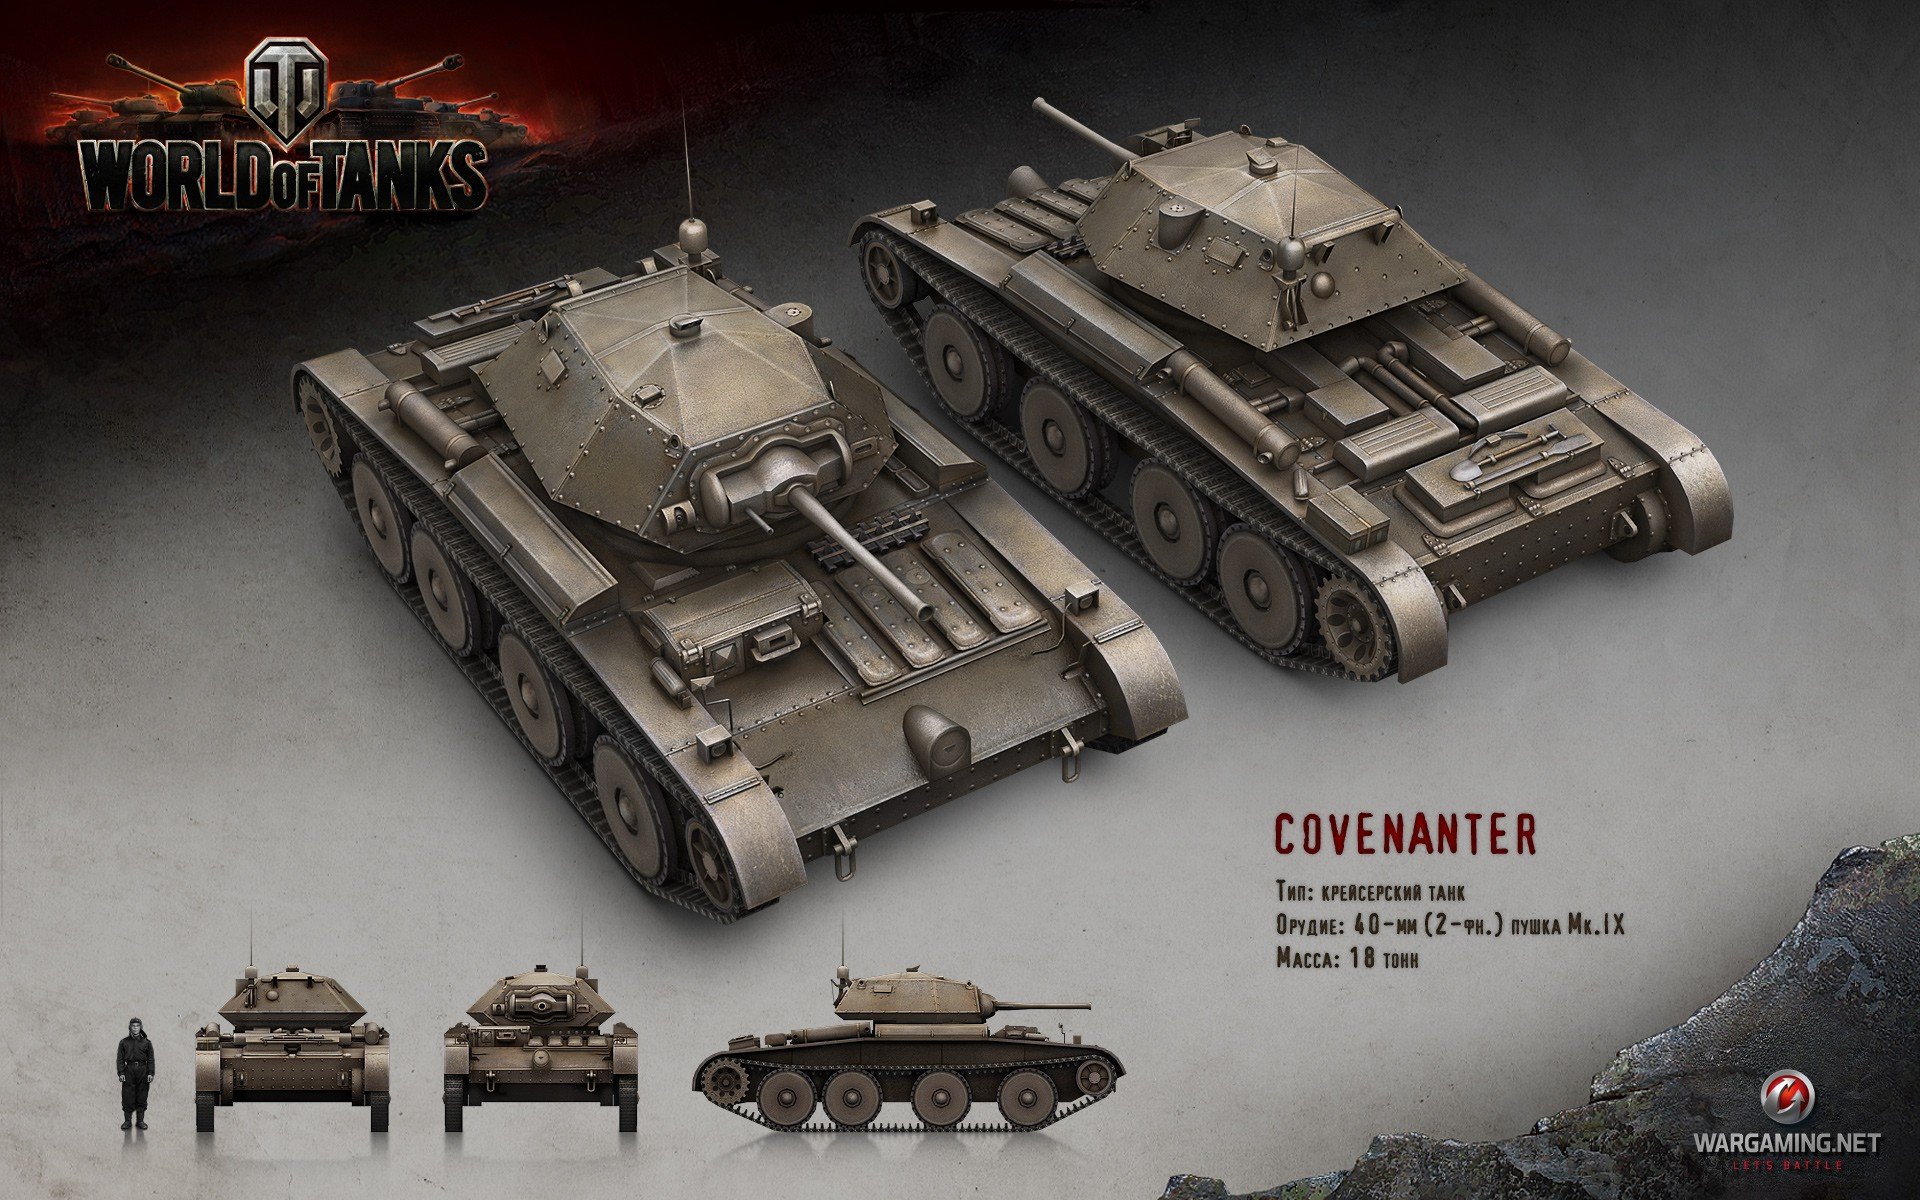 World of Tanks, Tank, Wargaming, Covenanter Wallpaper